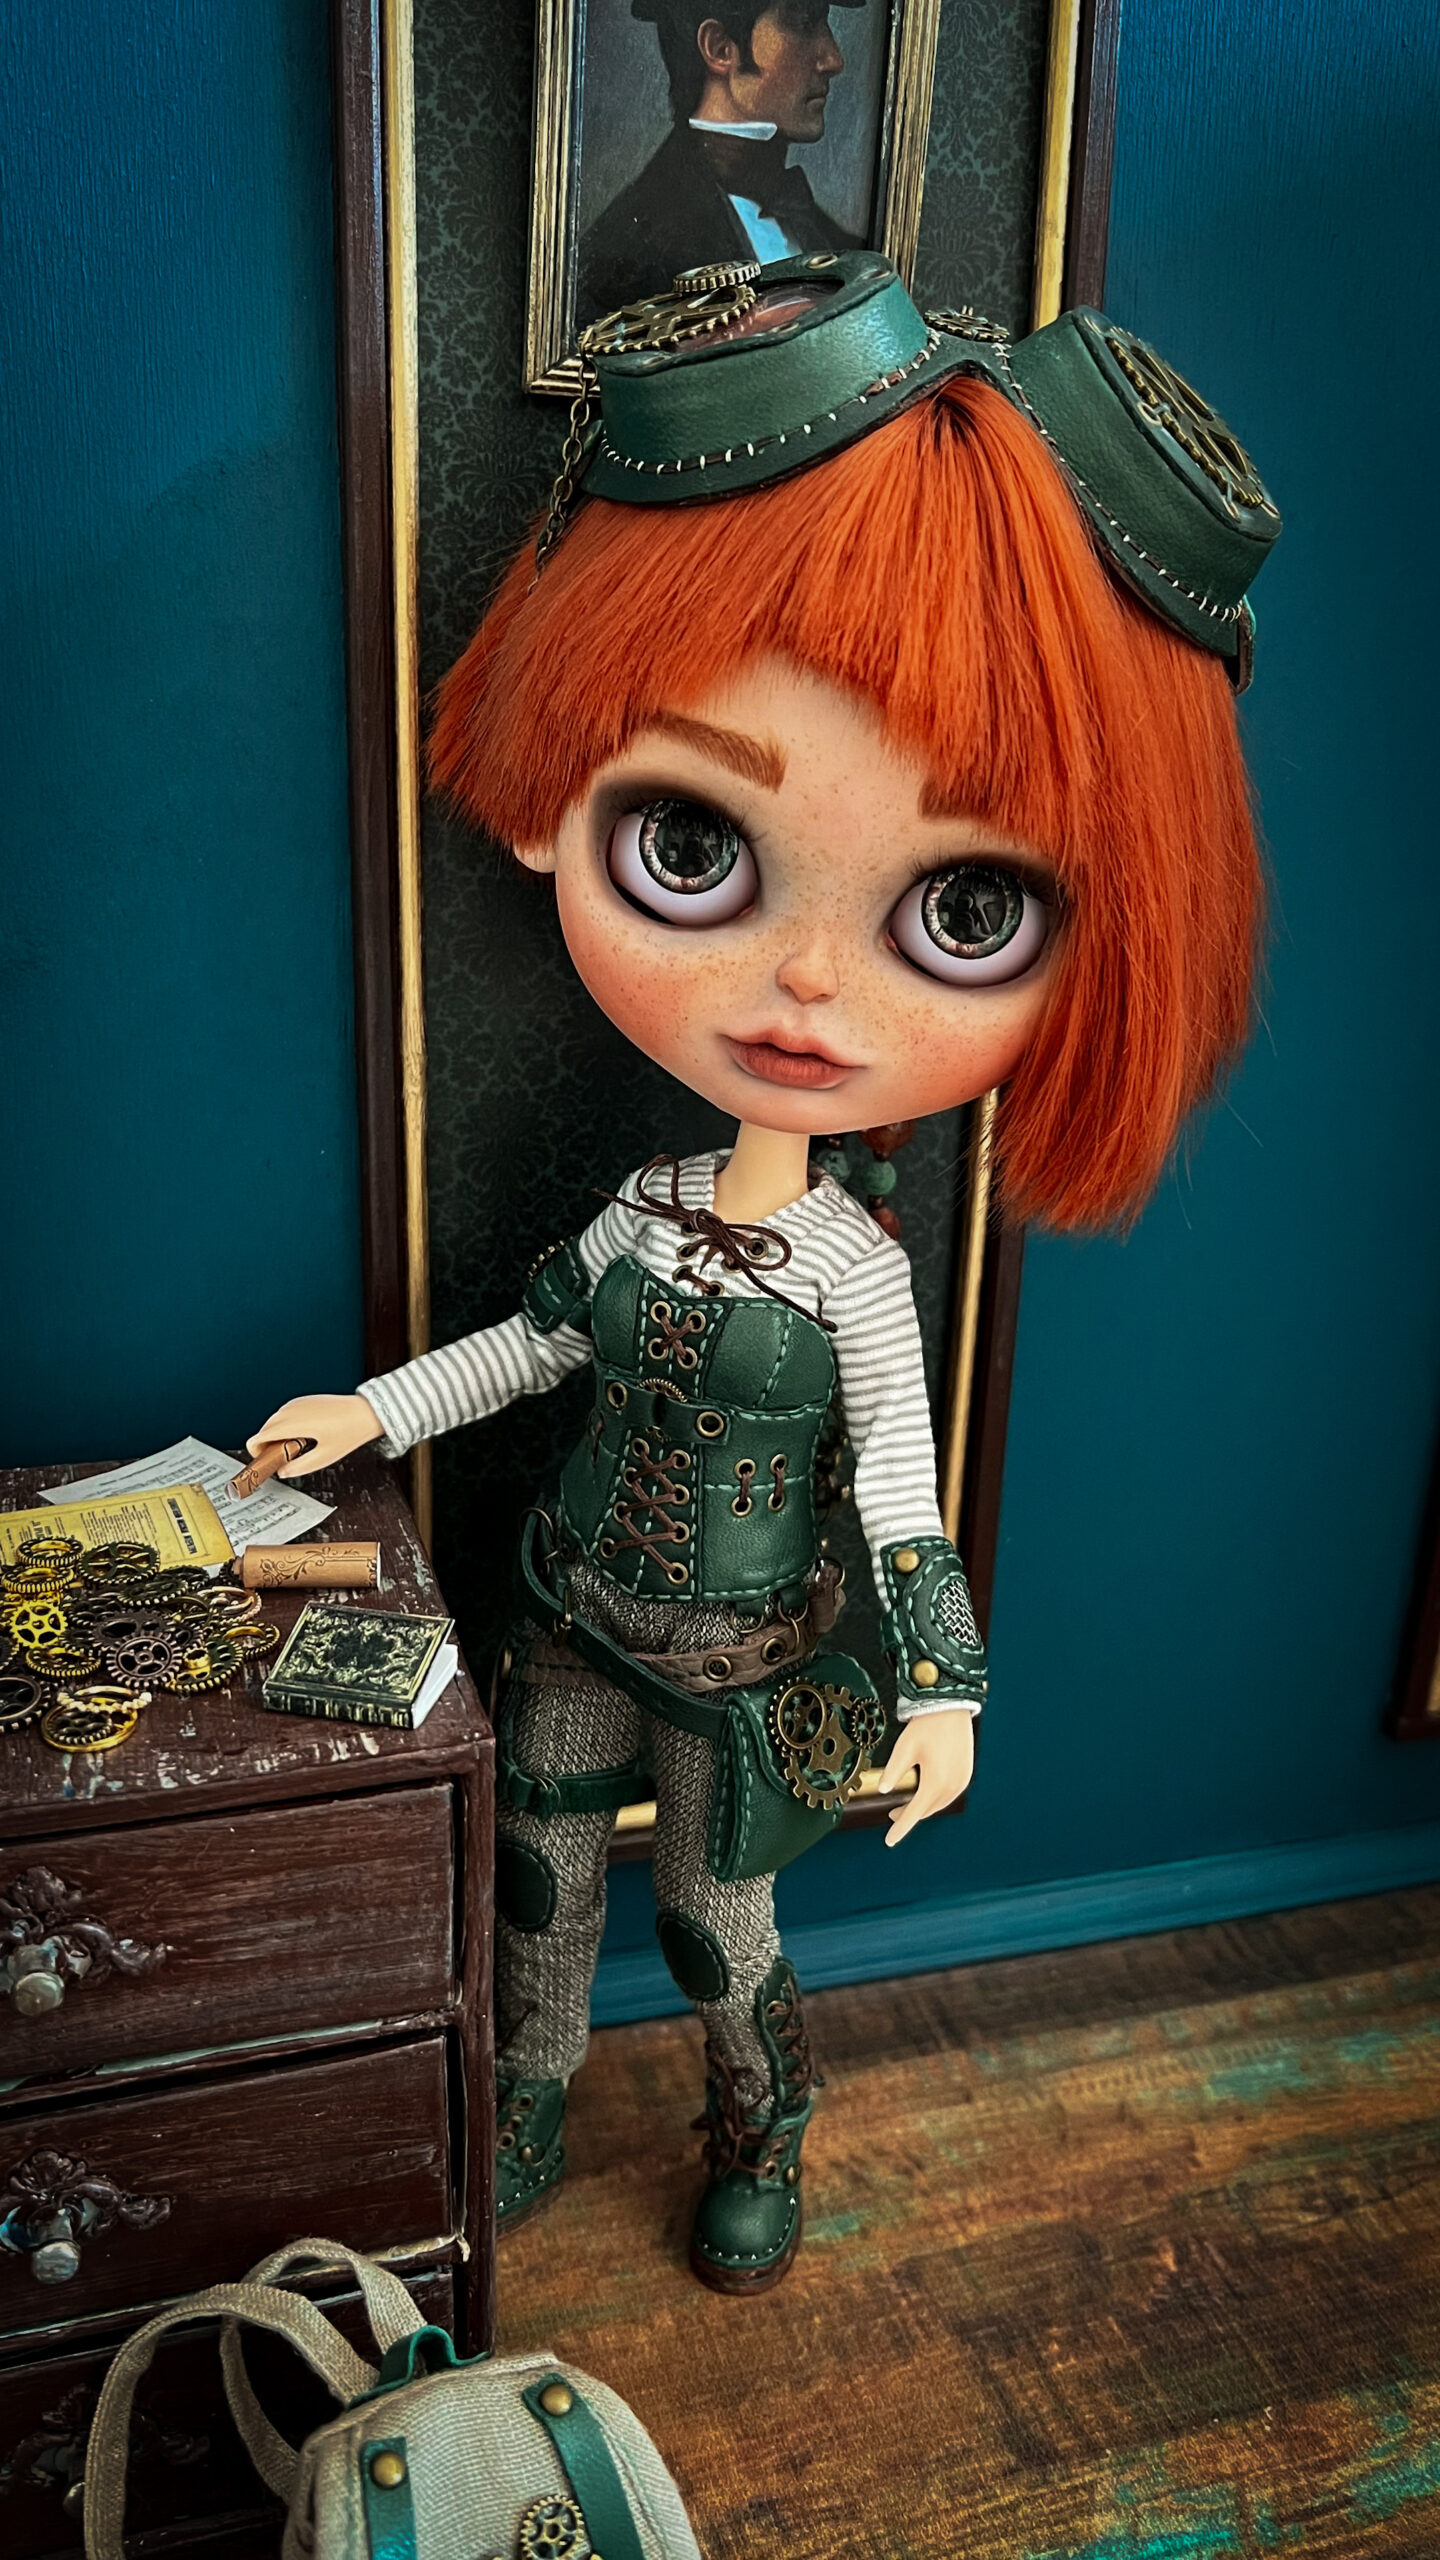 OOAK doll Phicen 1/6, Pamela. Complete set in steampunk style